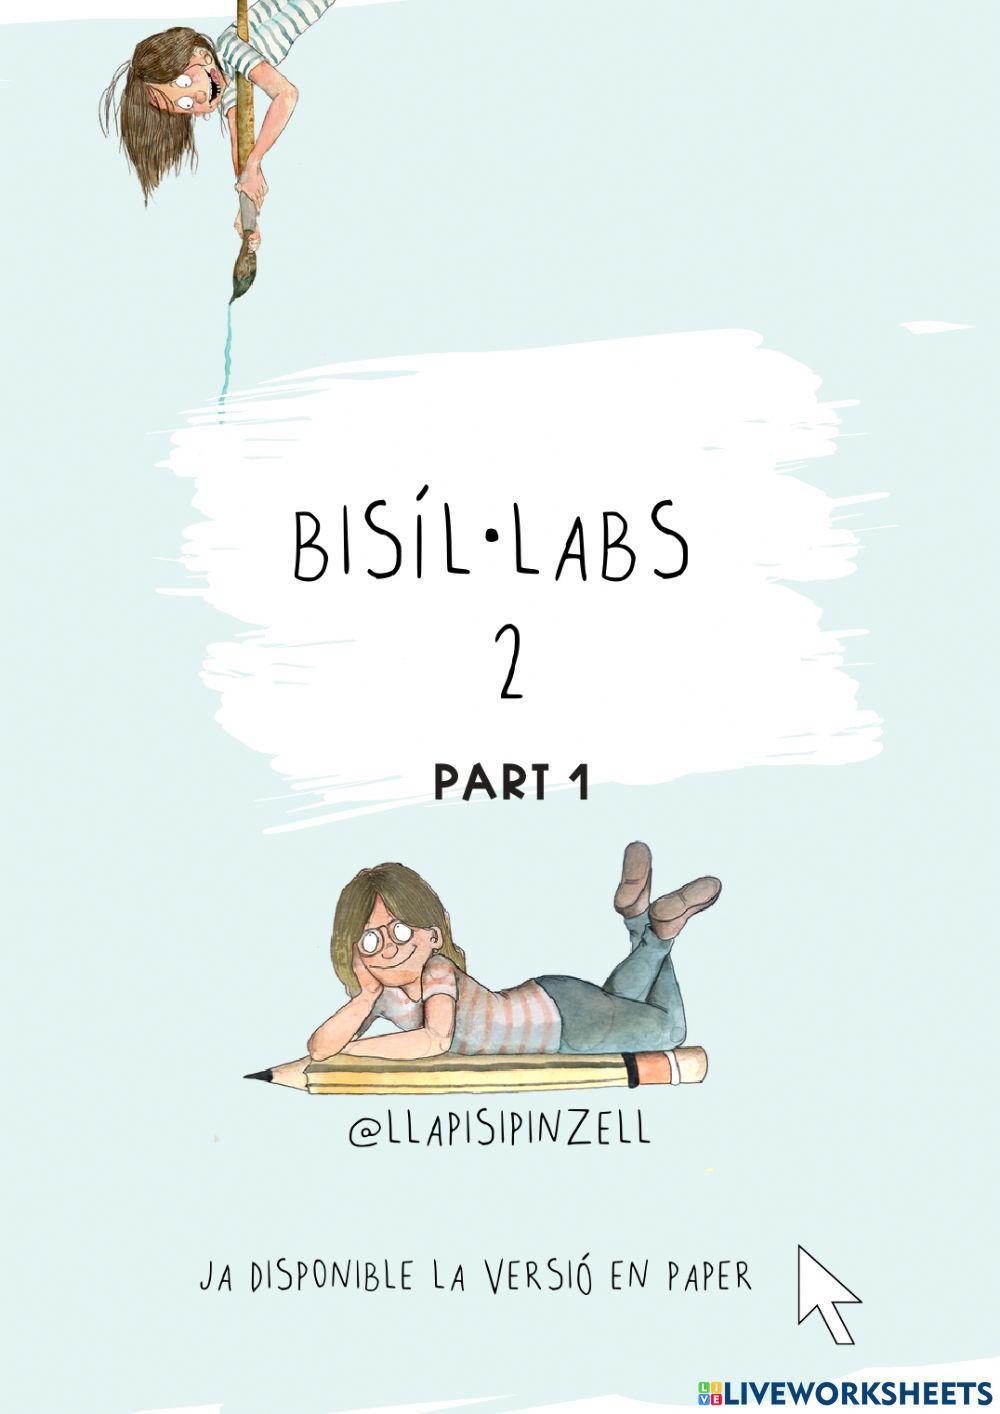 Bisíl·labs 2 primera part